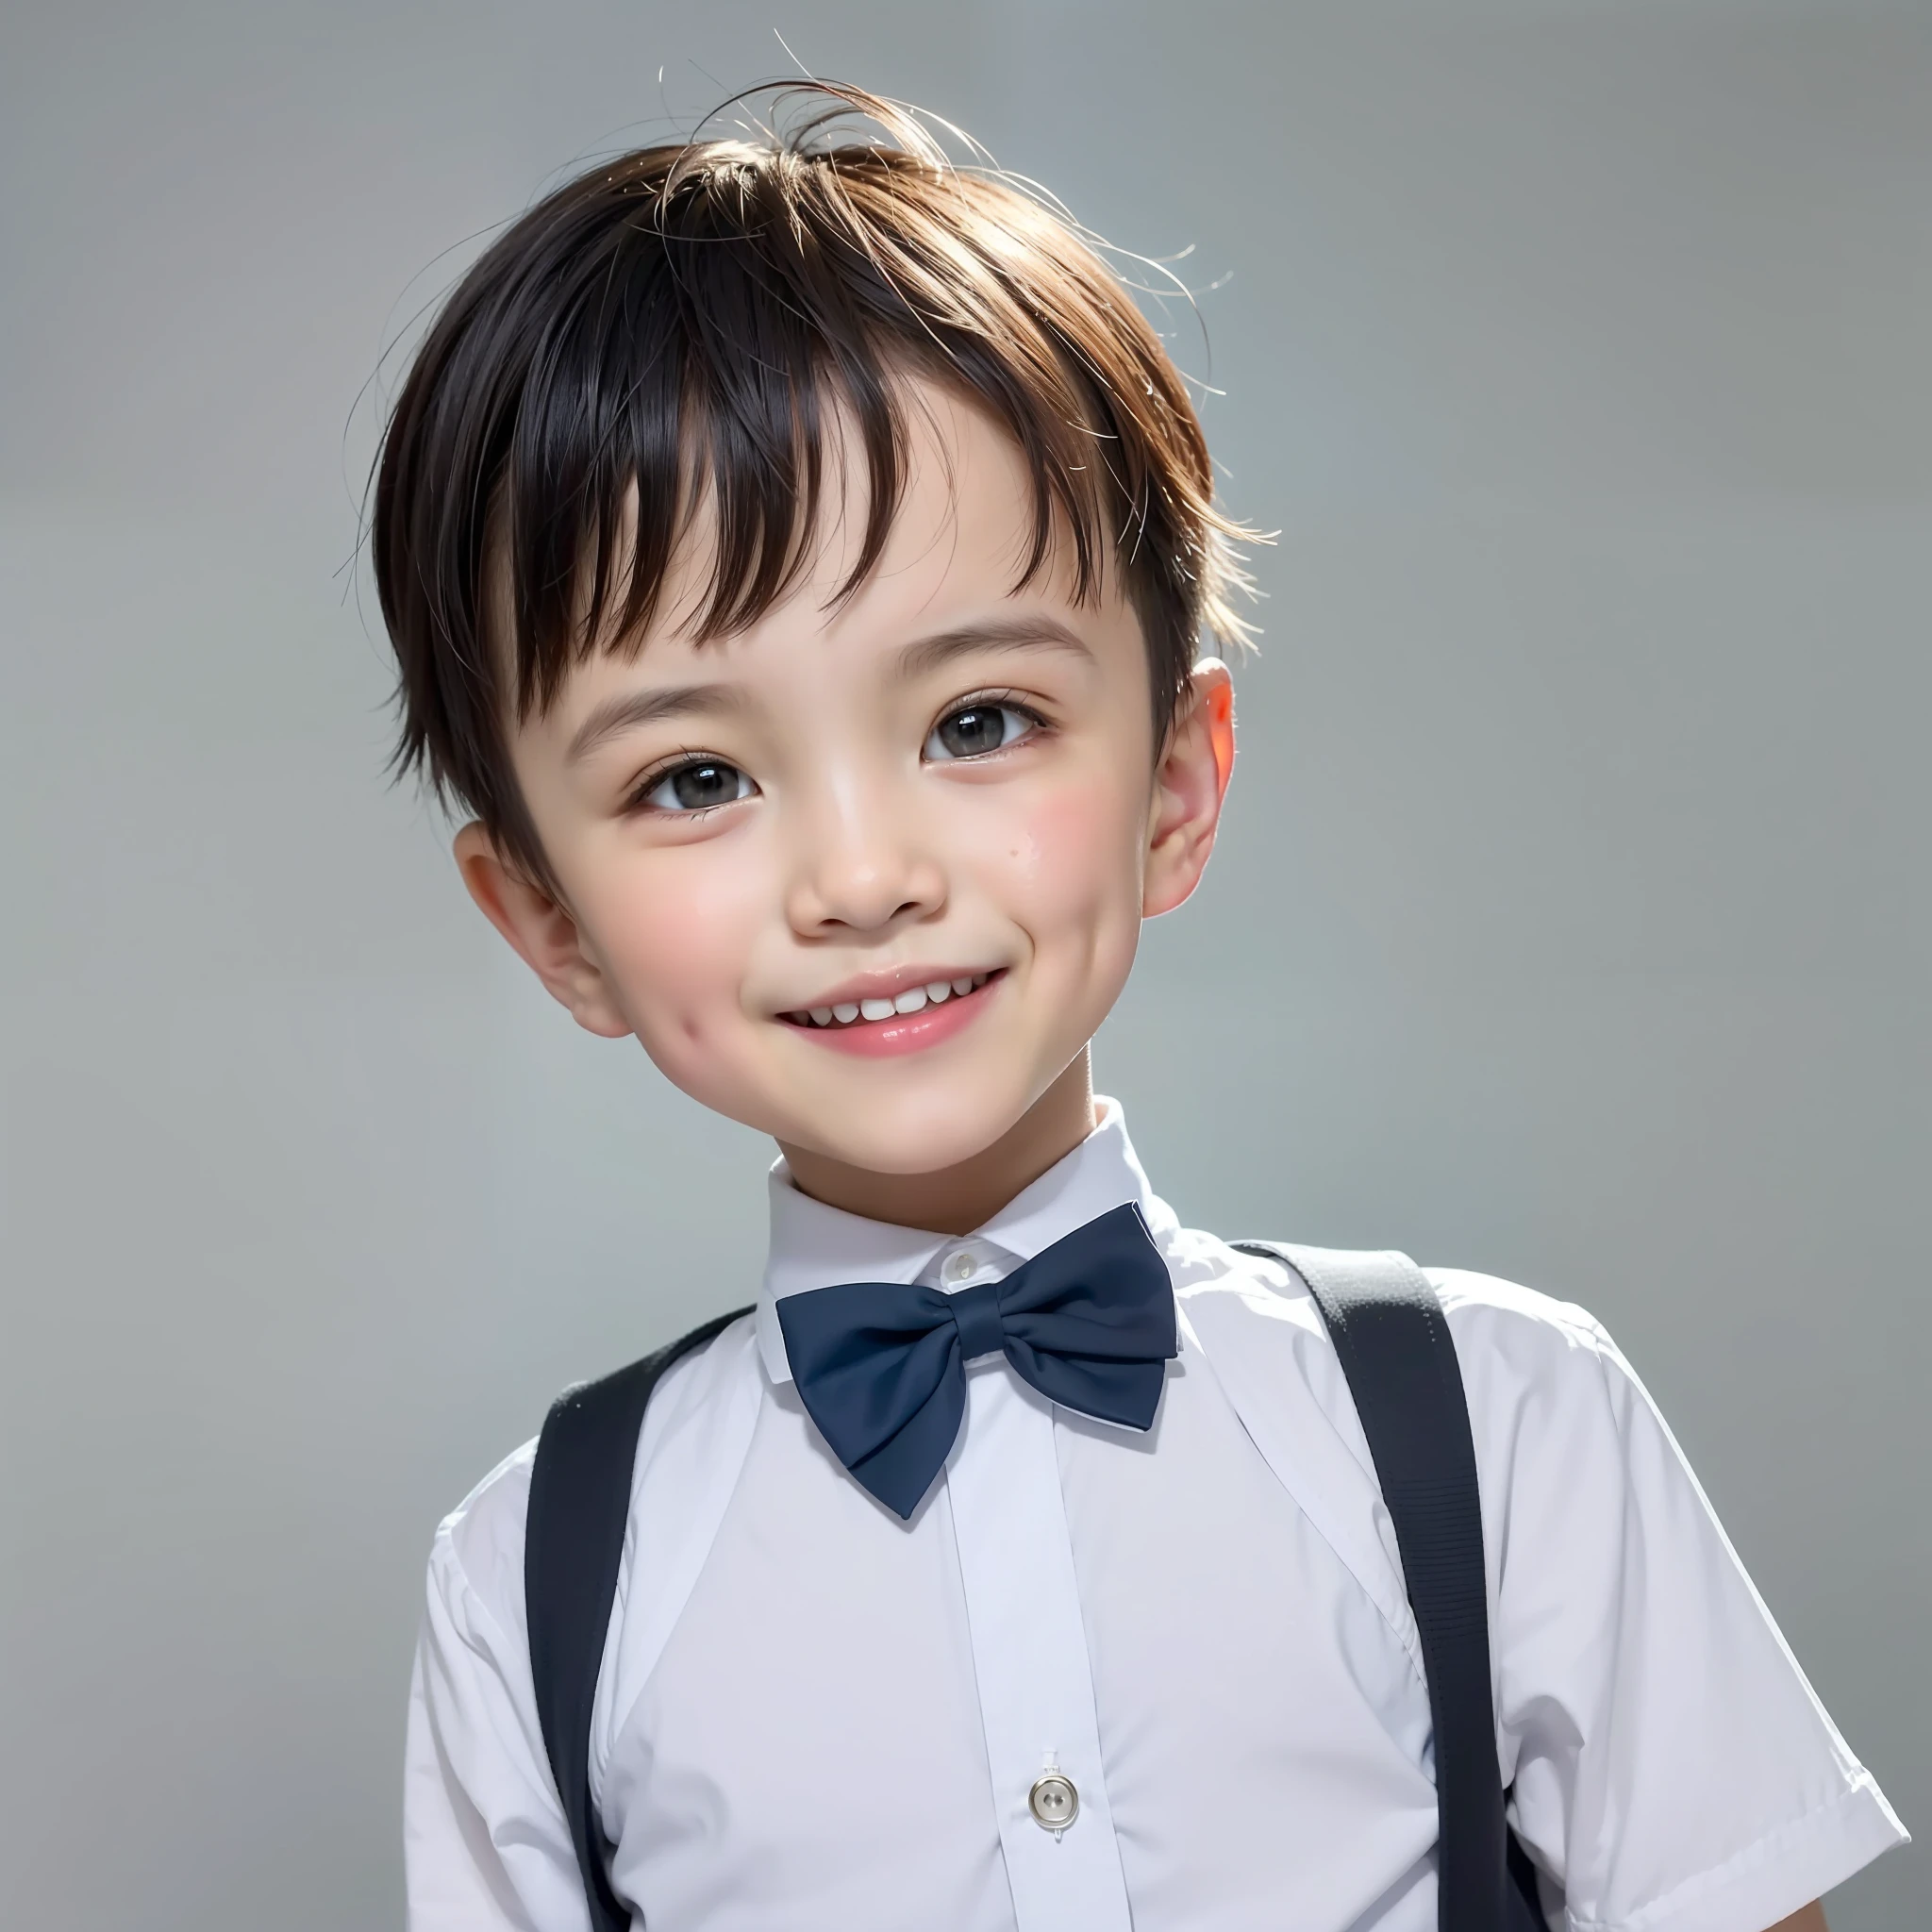 현대적인 스타일, 흰 바탕, 중국 아동 신분증 사진, 멋있는, 웃는 소년, 검은 눈, 플랫 헤드, 나비 넥타이